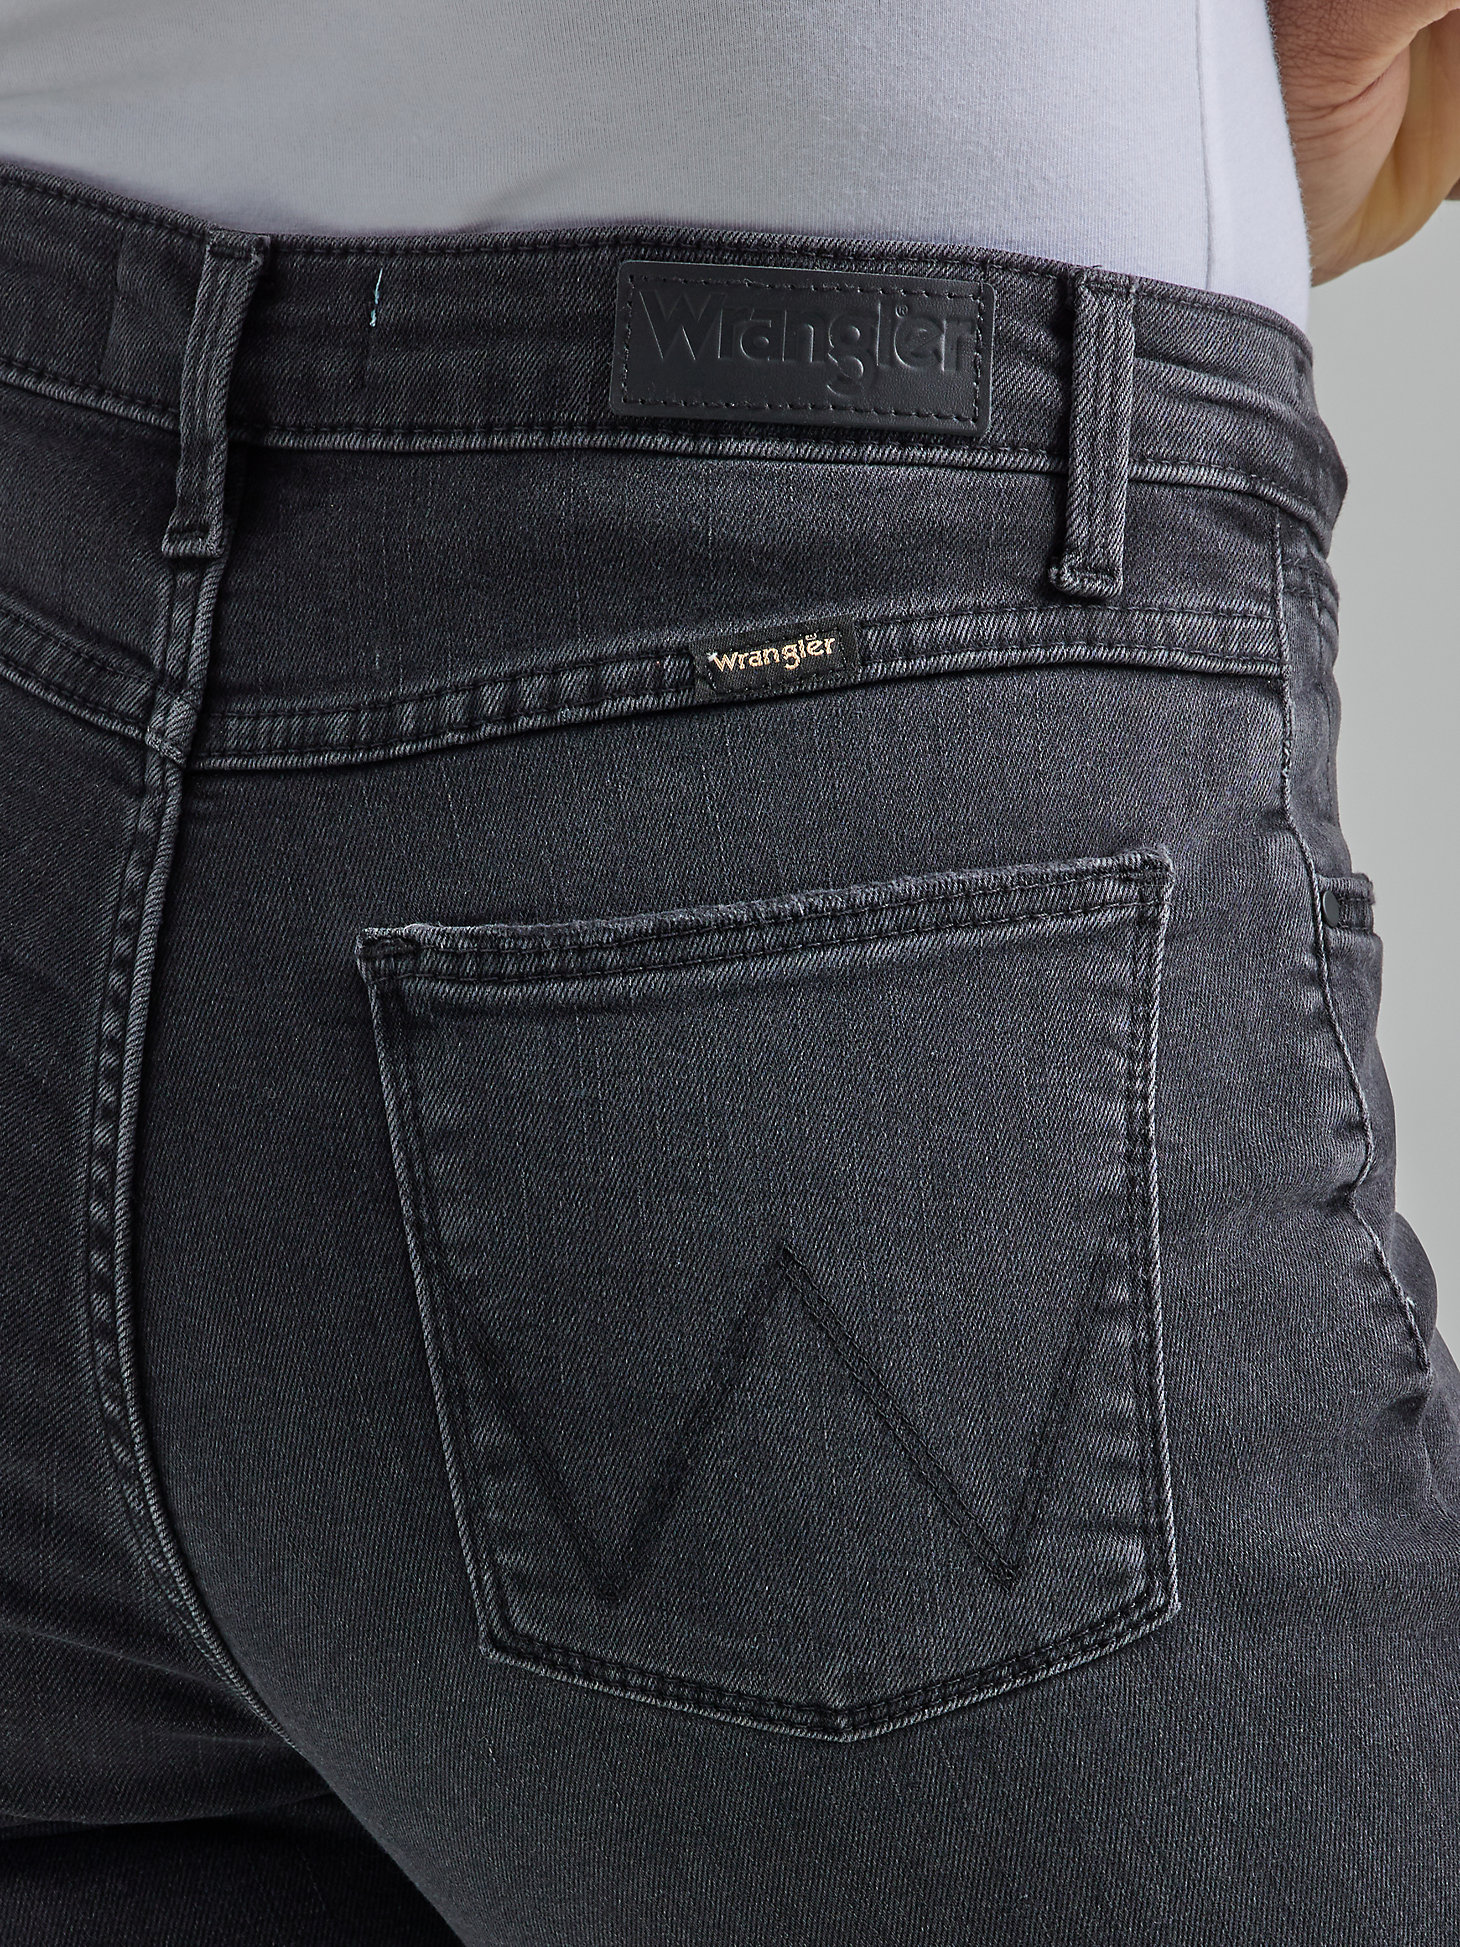 Women's Wrangler® Fierce Flare Jean in Black alternative view 2